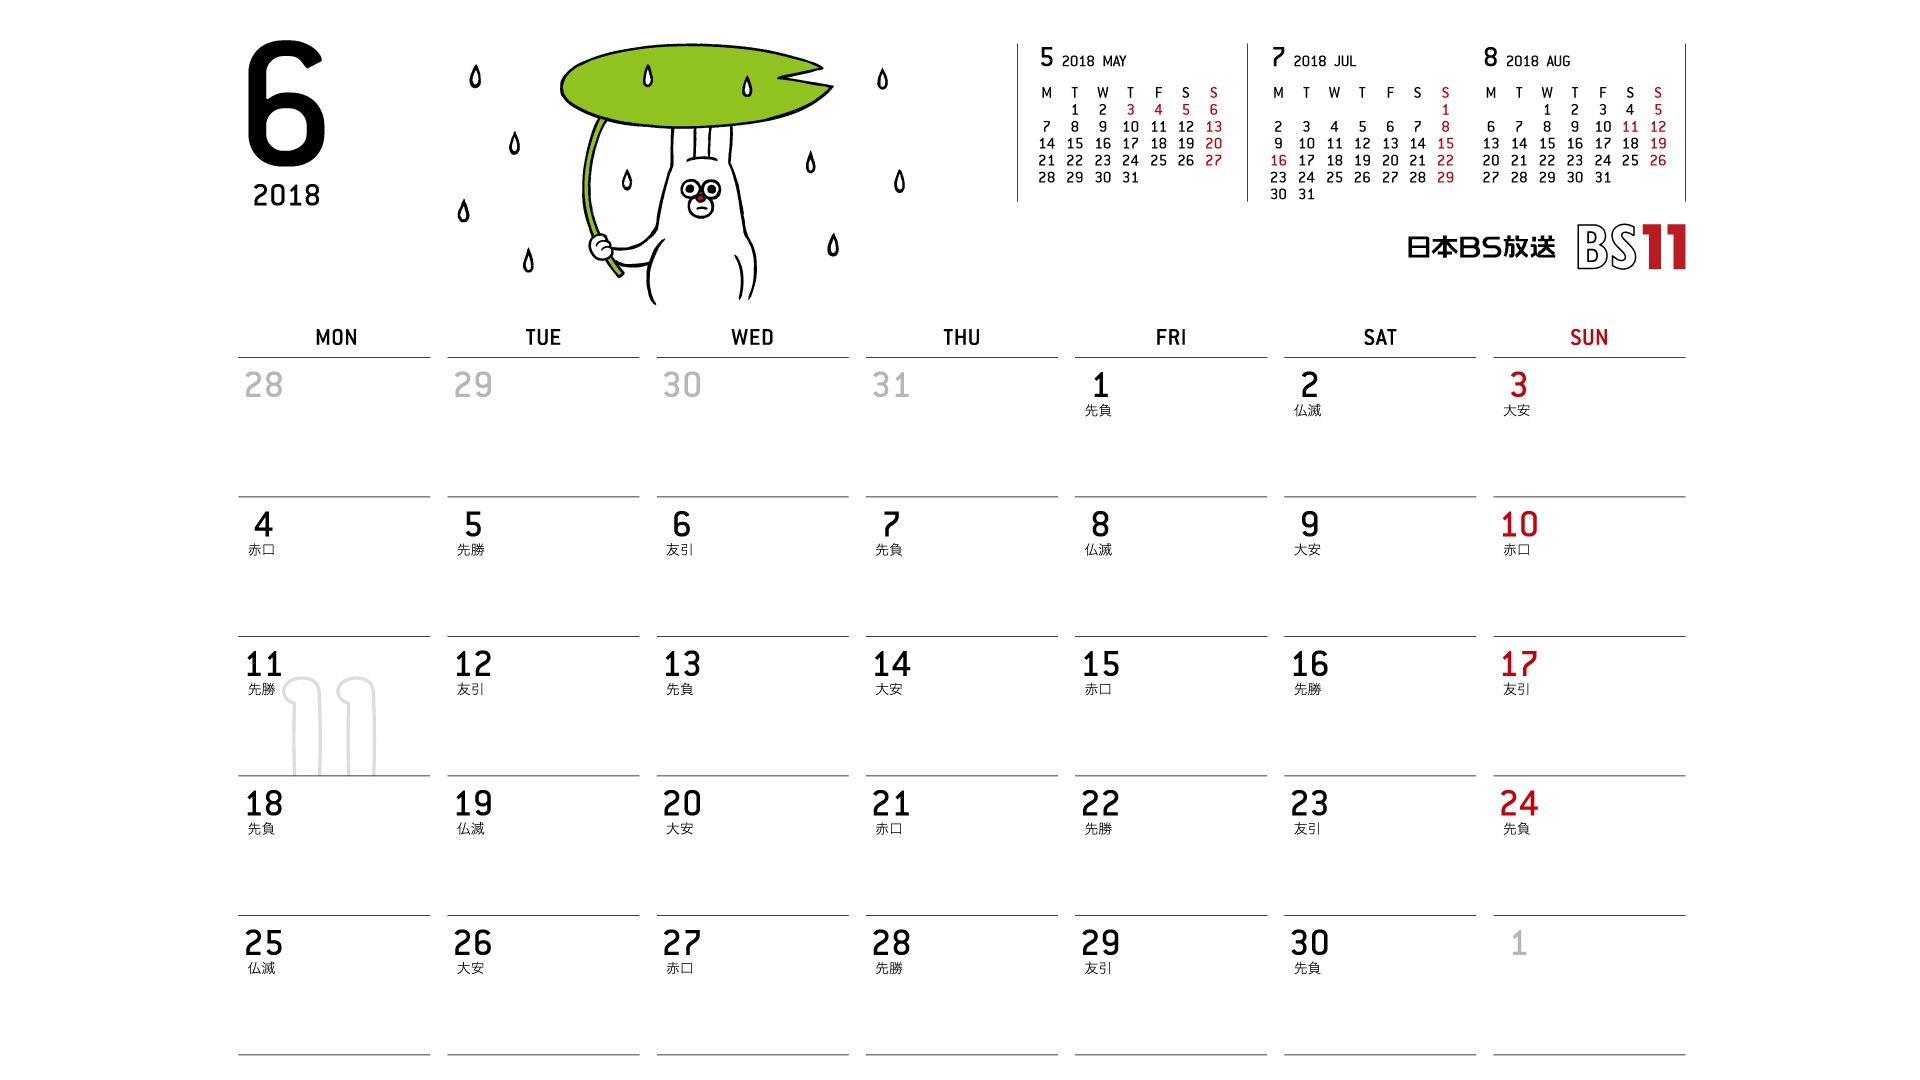 じゅういっちゃんのデジタルカレンダー18年06月 Bs11 イレブン いつでも無料放送